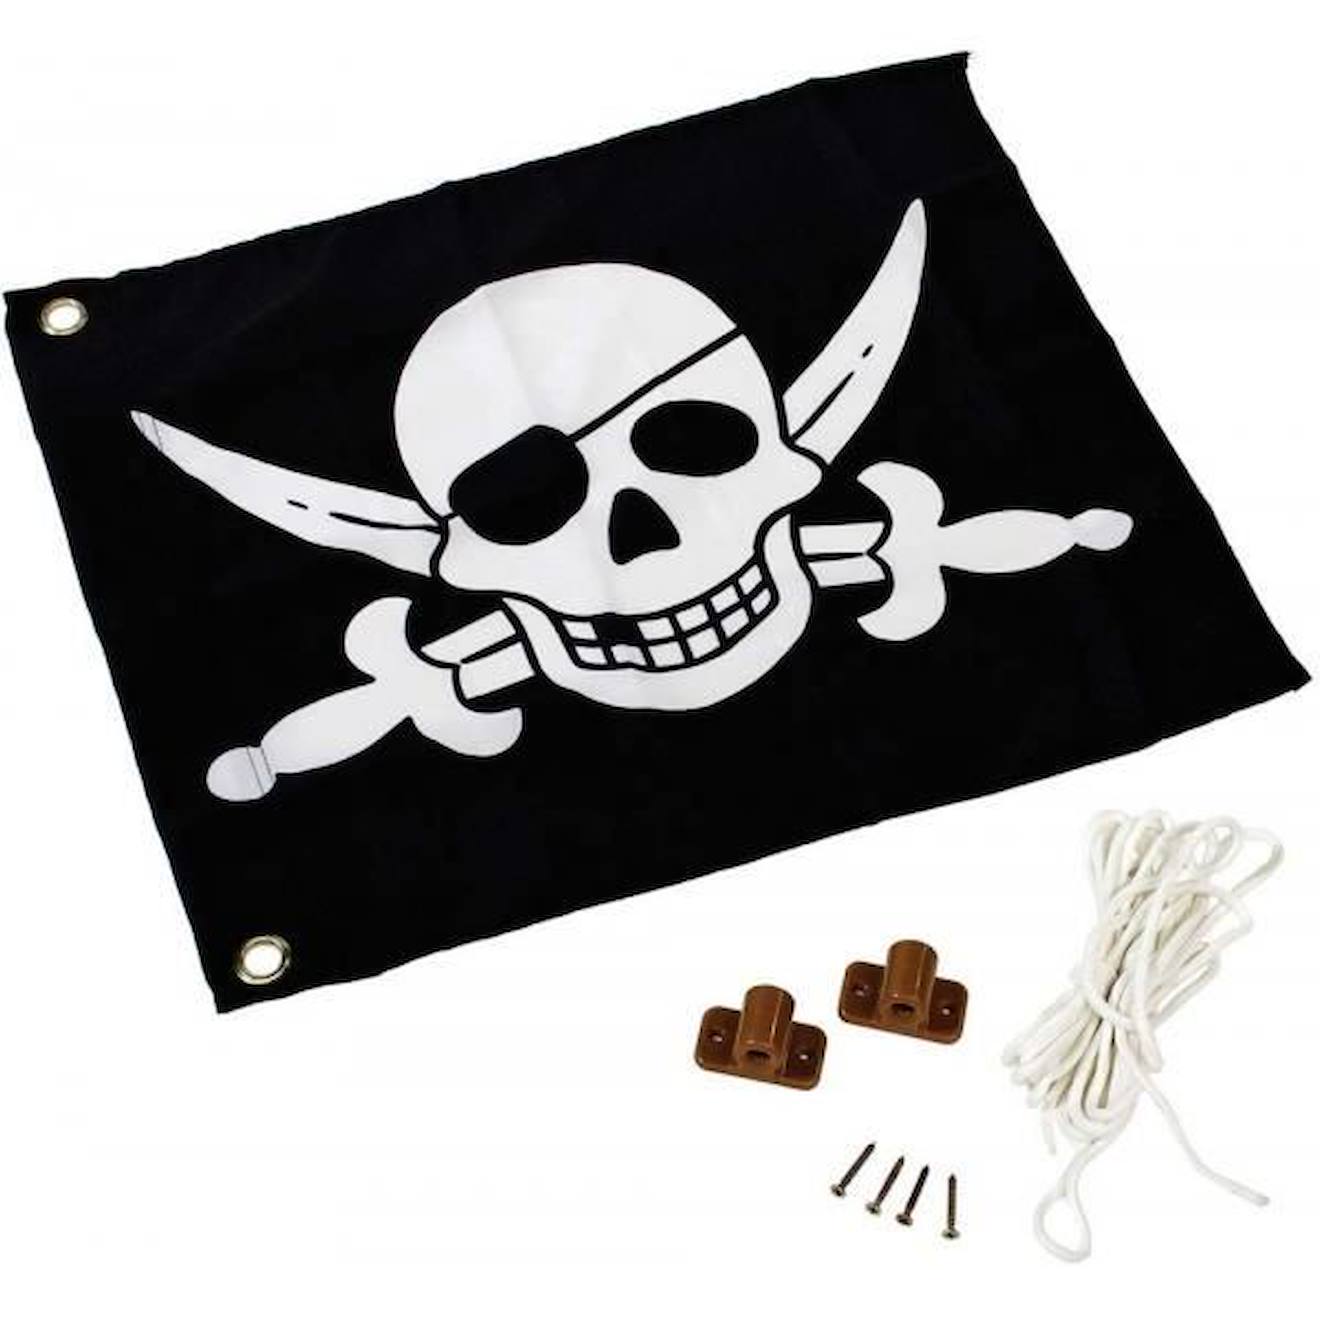 Drapeau Pirate Axi - Accessoire Maison Enfant / Aire De Jeux - Polyester - Multicolore - 55x45cm Noi